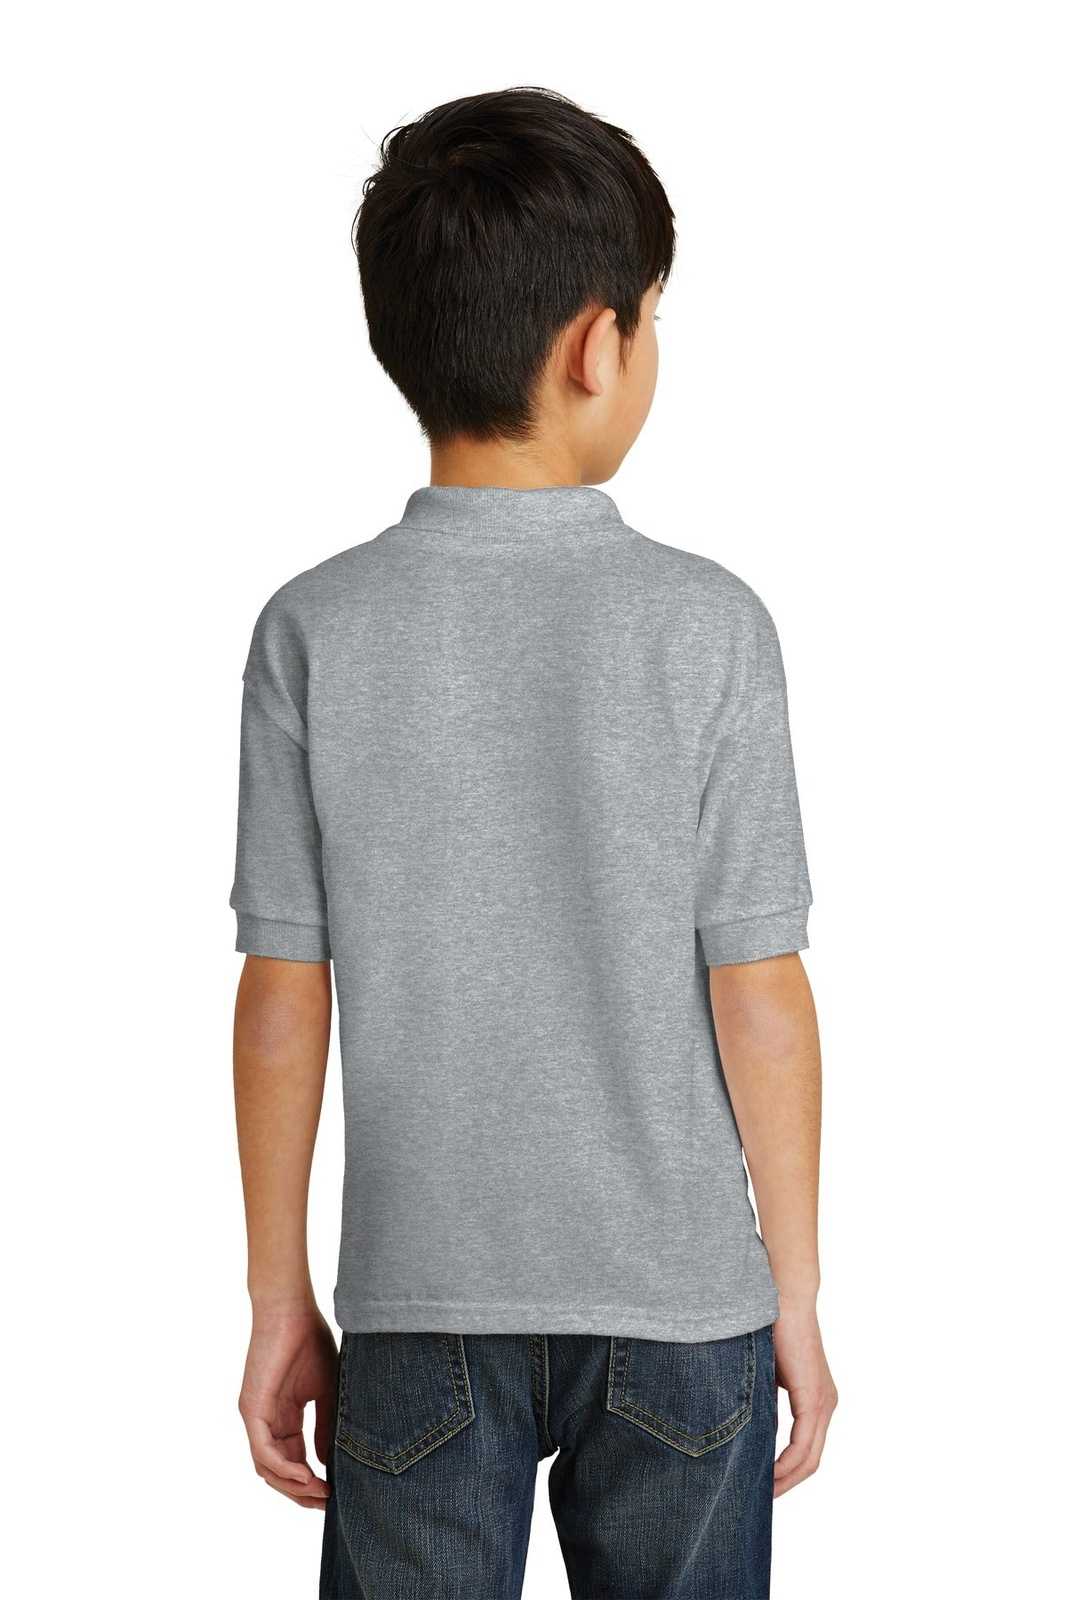 Gildan 8800B Youth DryBlend 6-Ounce Jersey Knit Sport Shirt - Sport Gray - HIT a Double